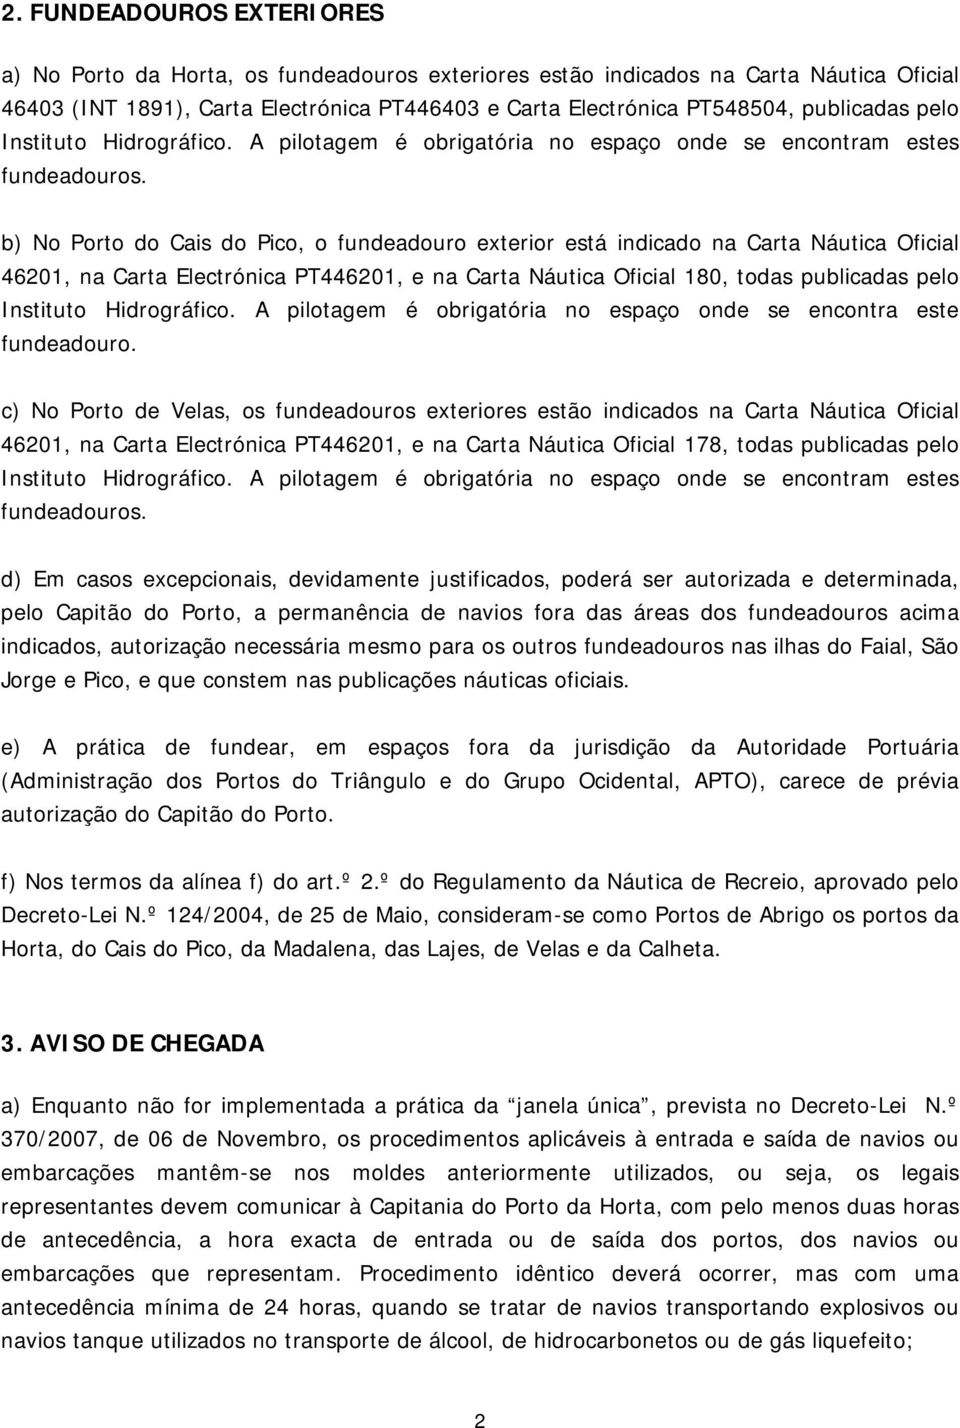 b) No Porto do Cais do Pico, o fundeadouro exterior está indicado na Carta Náutica Oficial 46201, na Carta Electrónica PT446201, e na Carta Náutica Oficial 180, todas publicadas pelo Instituto